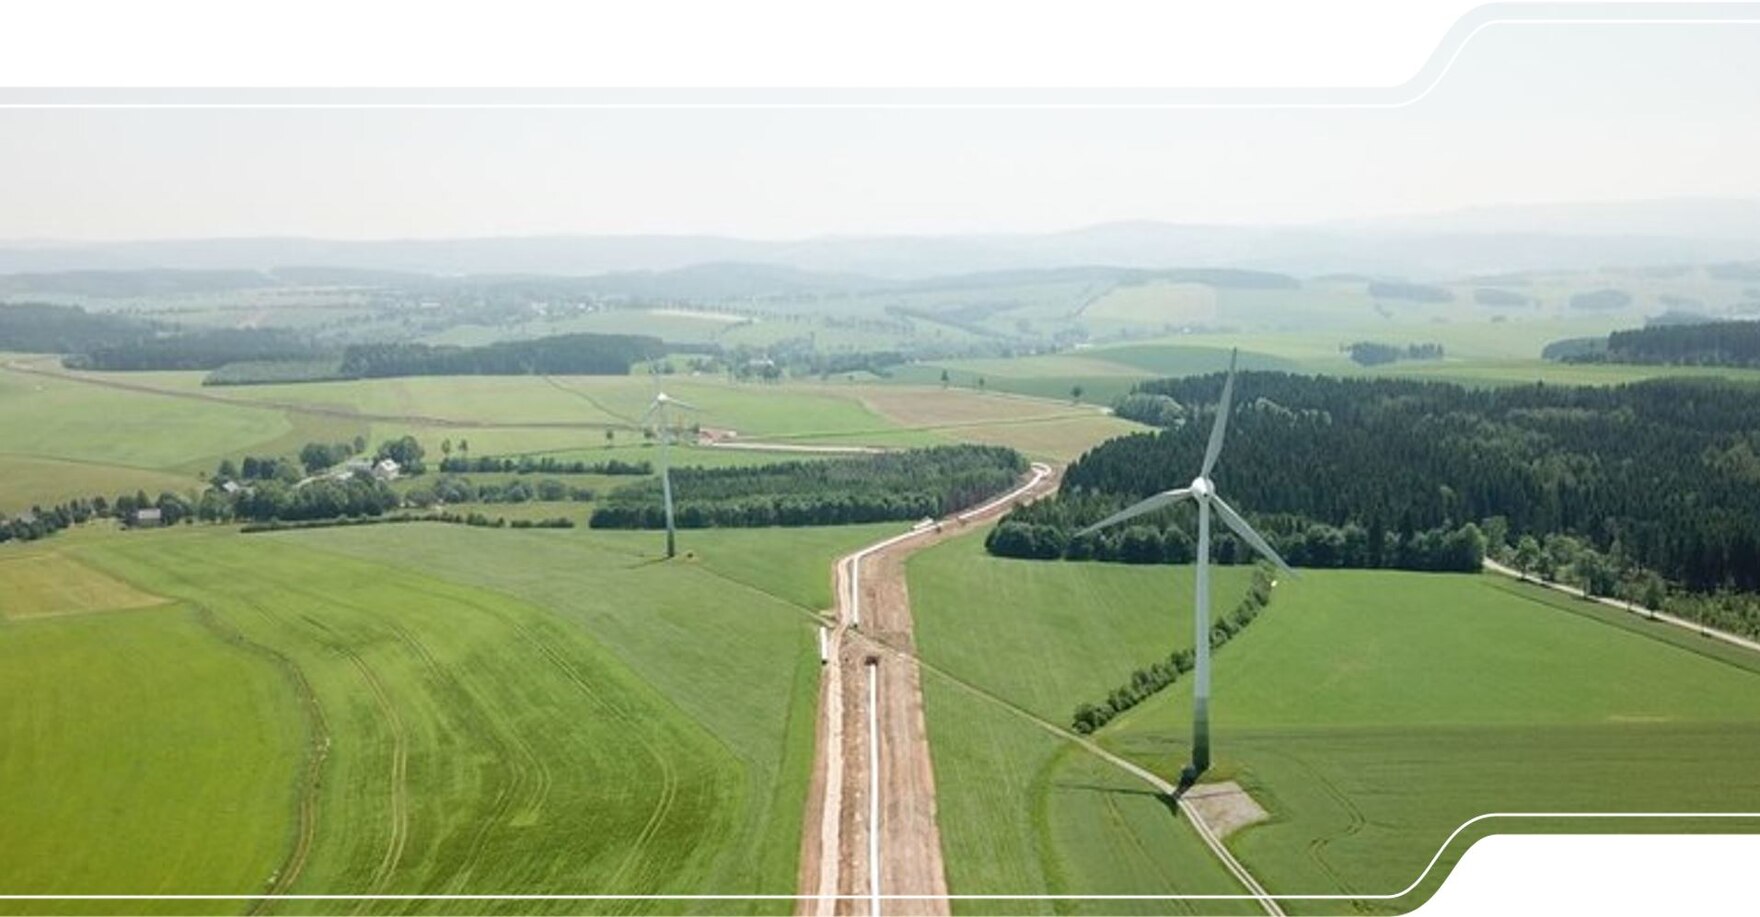 DAs Bild zeigt den Verlauf der frisch bearbeiteten Erdgastrasse EUGAL durch die sächsische Landschaft.